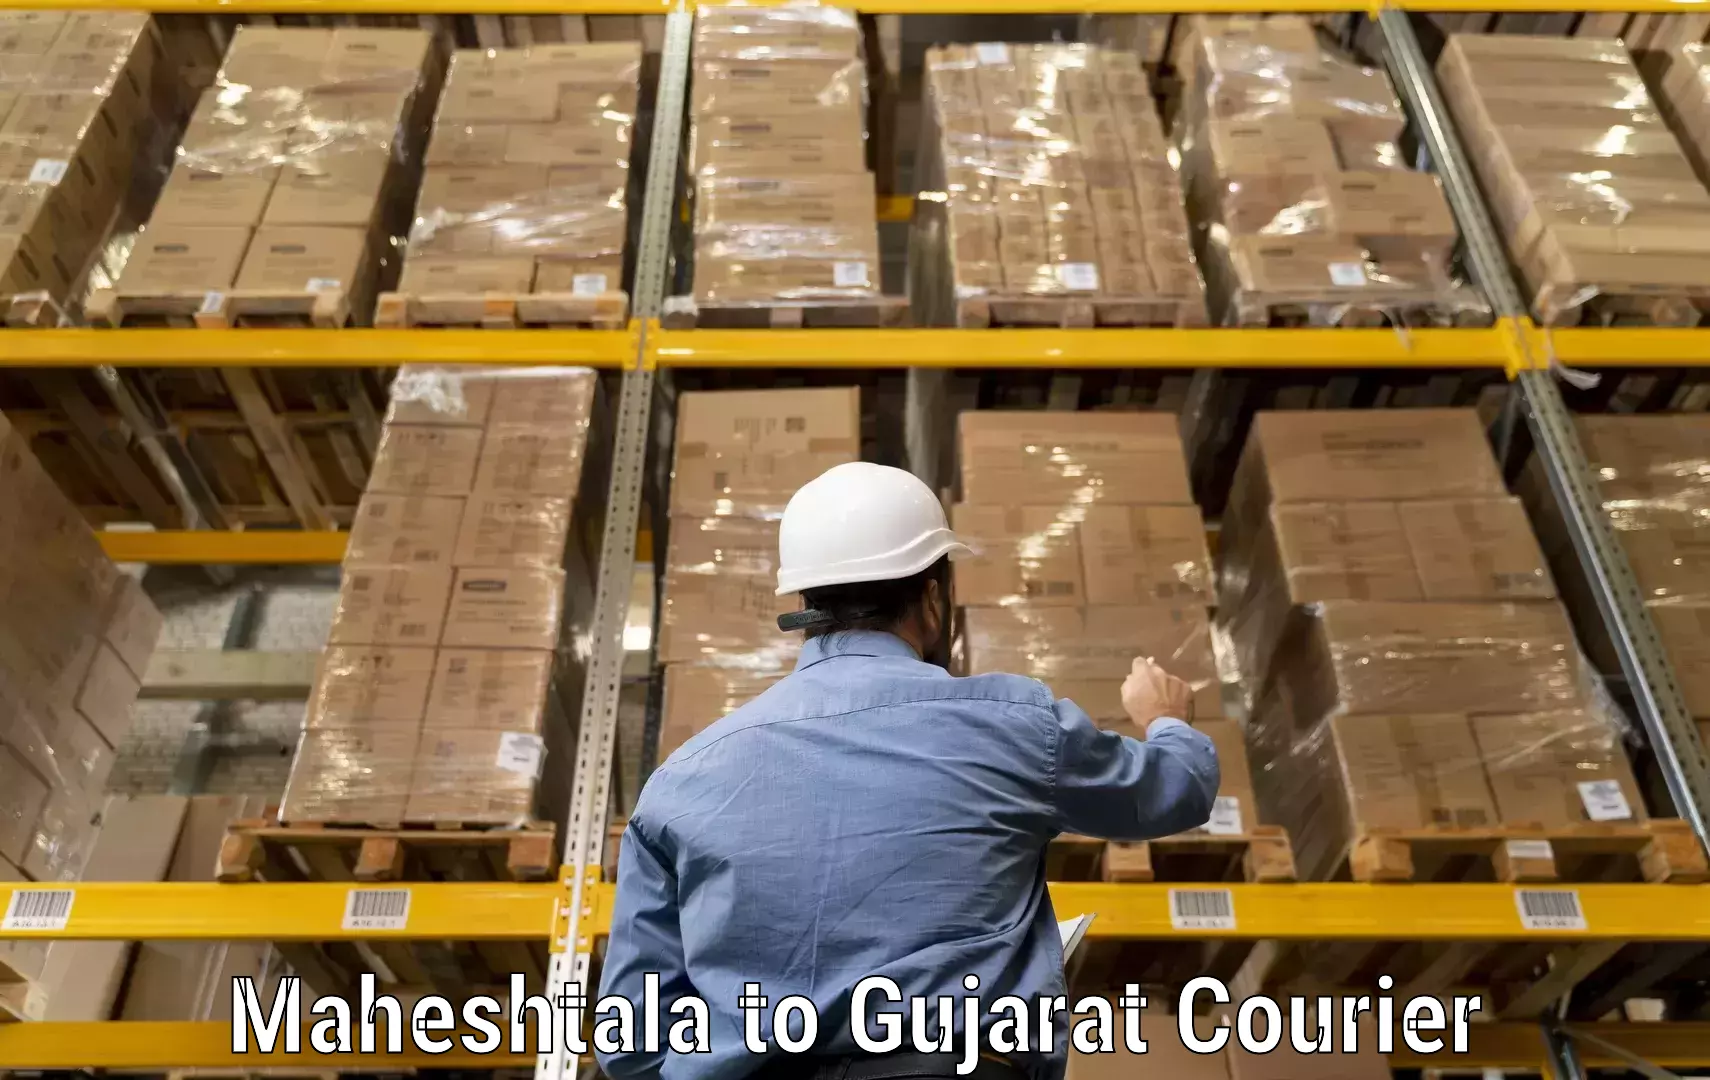 Innovative courier solutions in Maheshtala to Mundra